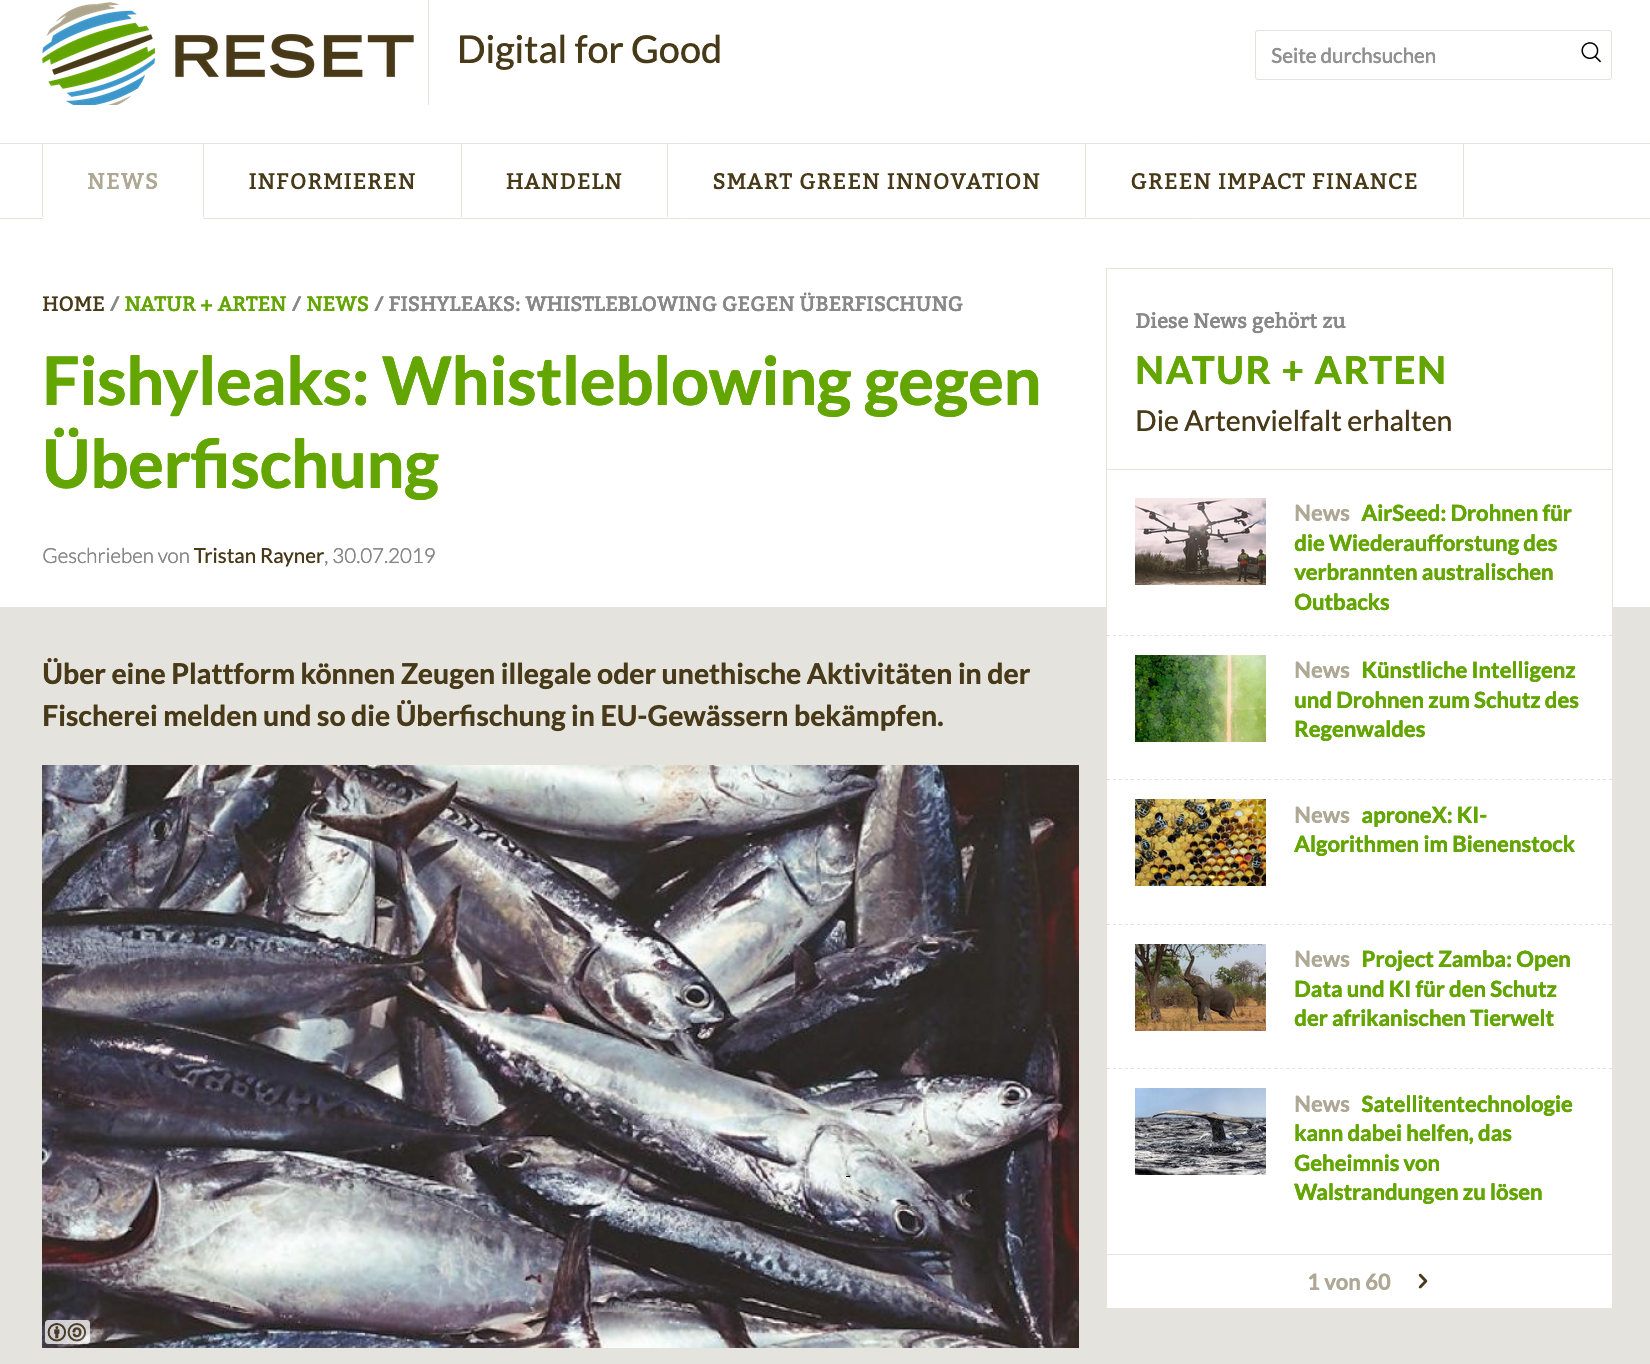 Fishyleaks: Whistleblowing gegen Überfischung